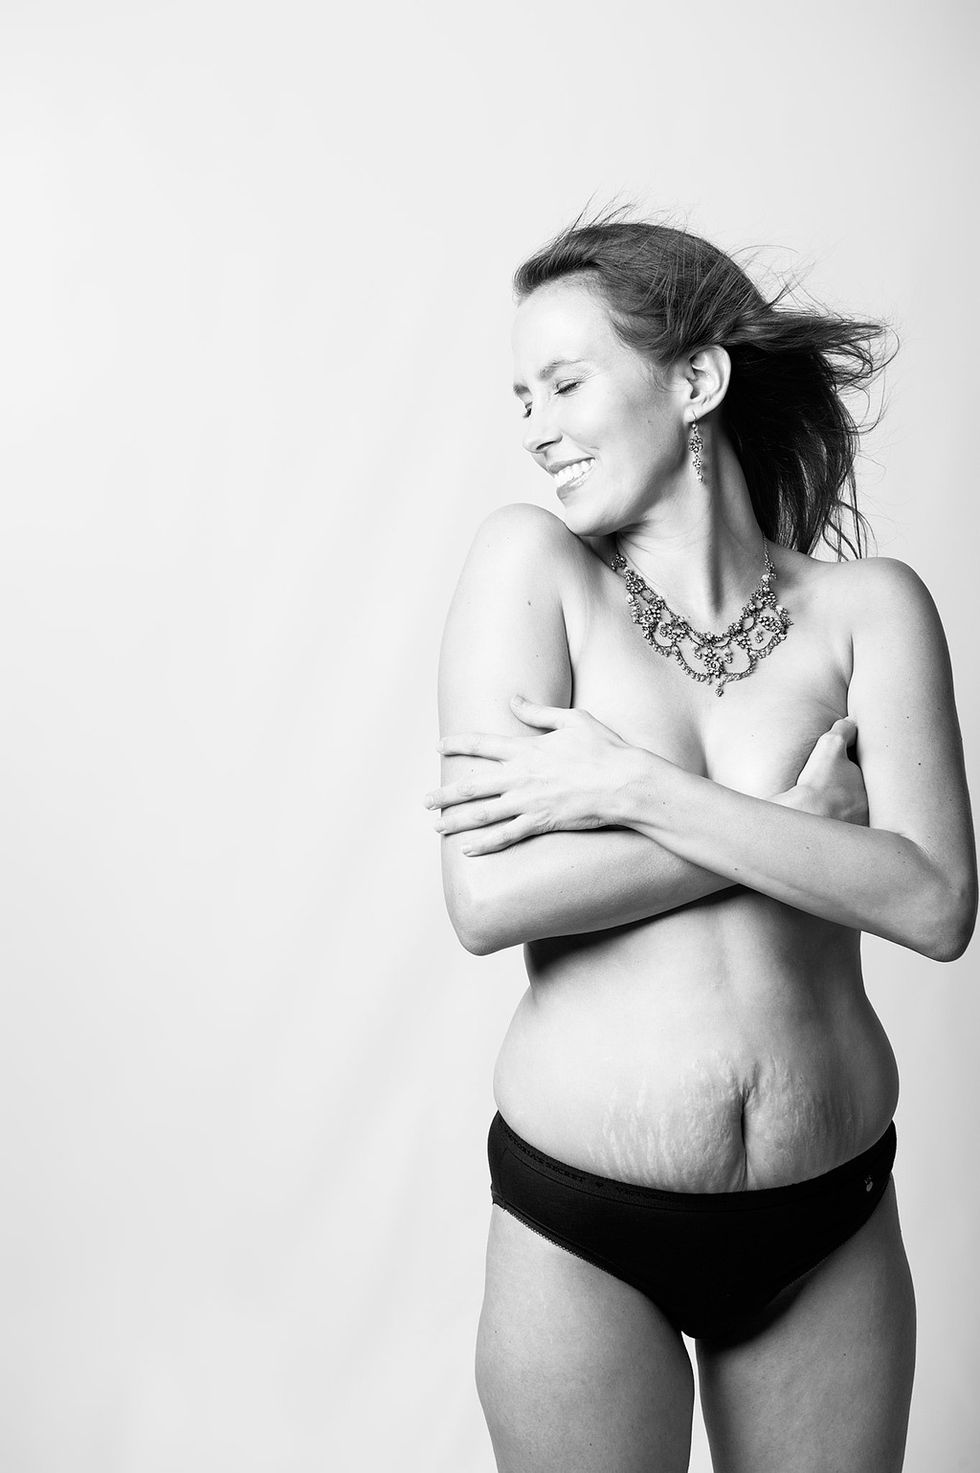 <p>&quot;No he visto a nadie que celebre los cuerpos que han dado a luz, salvo aquellos que han vuelto a su ser tras el parto&quot;, denuncia la fotógrafa <a href="http://www.jadebeall.com/" target="_blank">Jade Beall</a>. Beall ha recopilado los cuerpos reales de mujeres que han estado embarazadas en el proyecto <a href="http://www.abeautifulbodyproject.org/" target="_blank">A Beautiful Body</a>: “La fotografía es mostrarte como eres”, asegura. “No necesitas hacer desaparecer nada de tu cuerpo para que éste sea considerado bello o artístico”.</p>